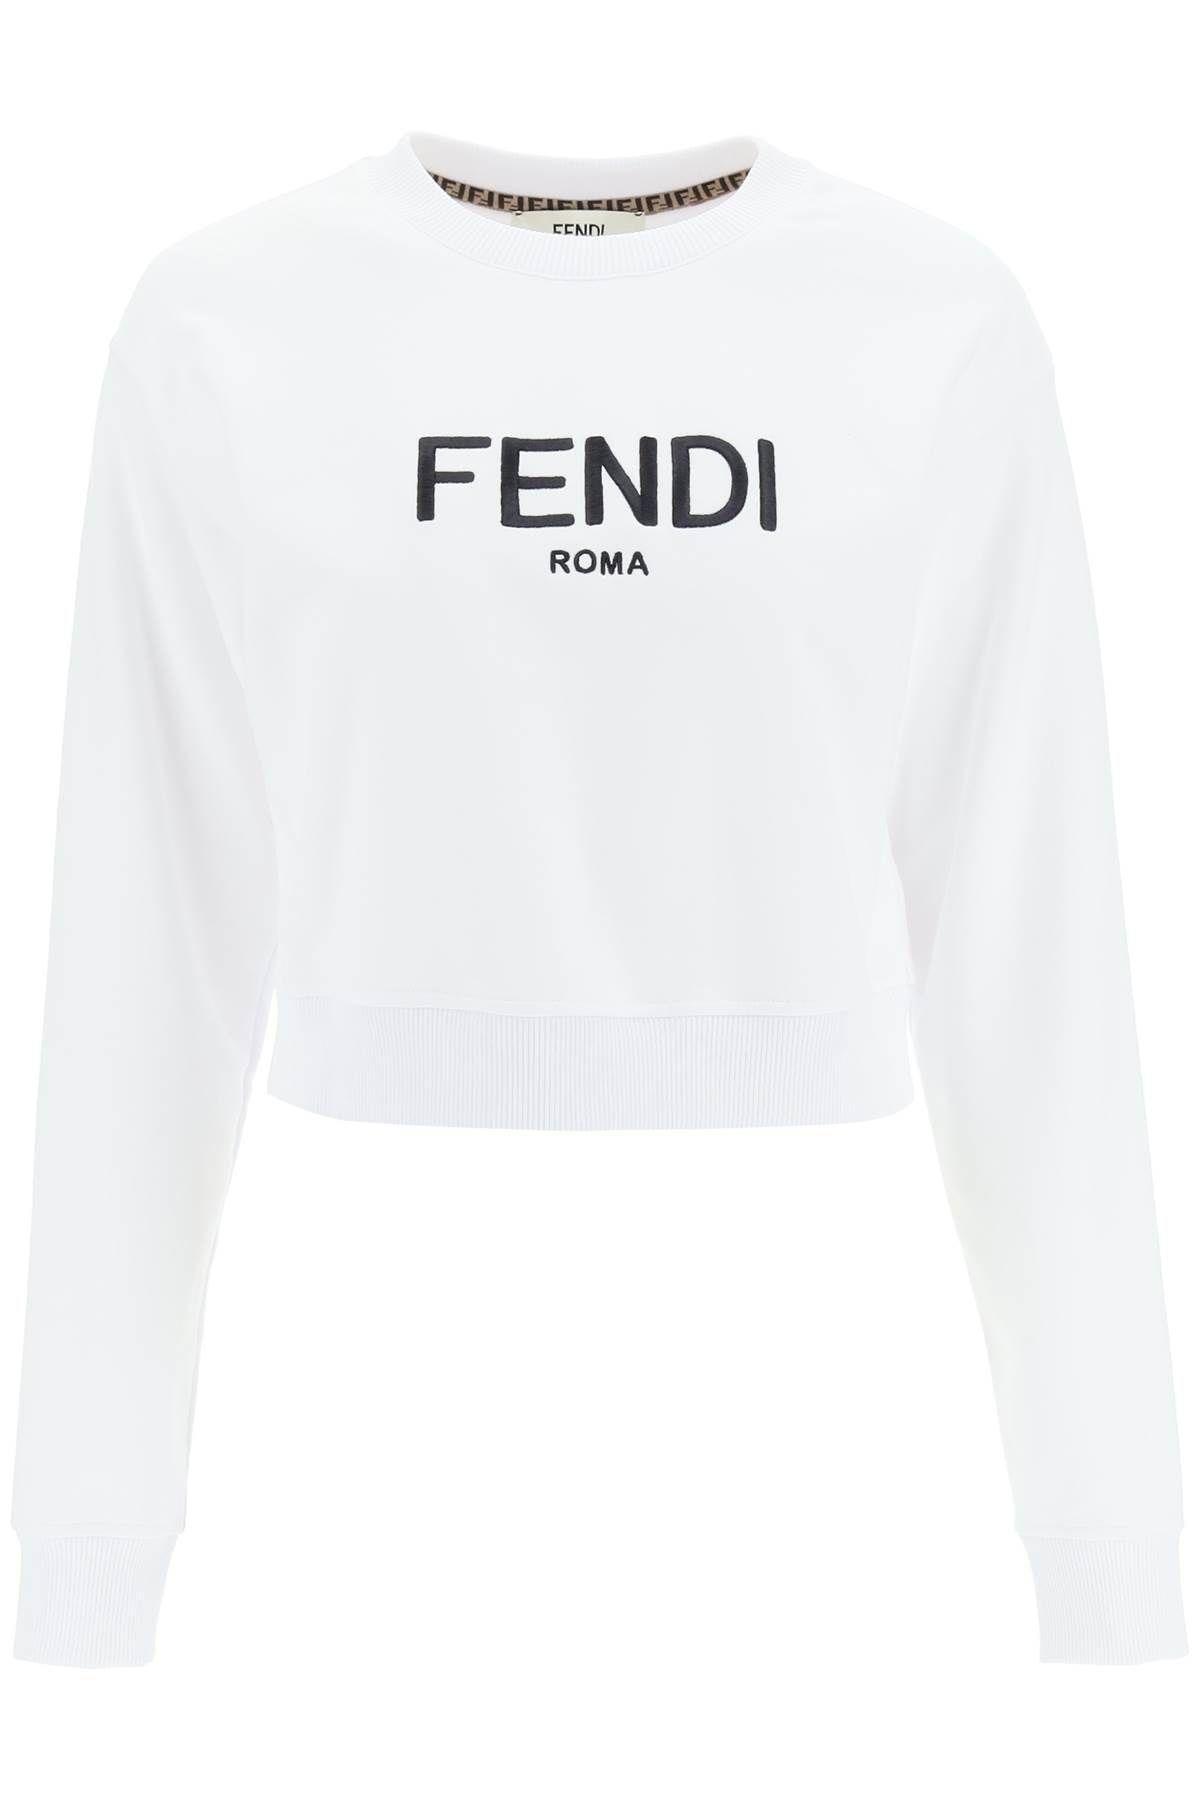 Fendi Roma Embroidered Sweatshirt